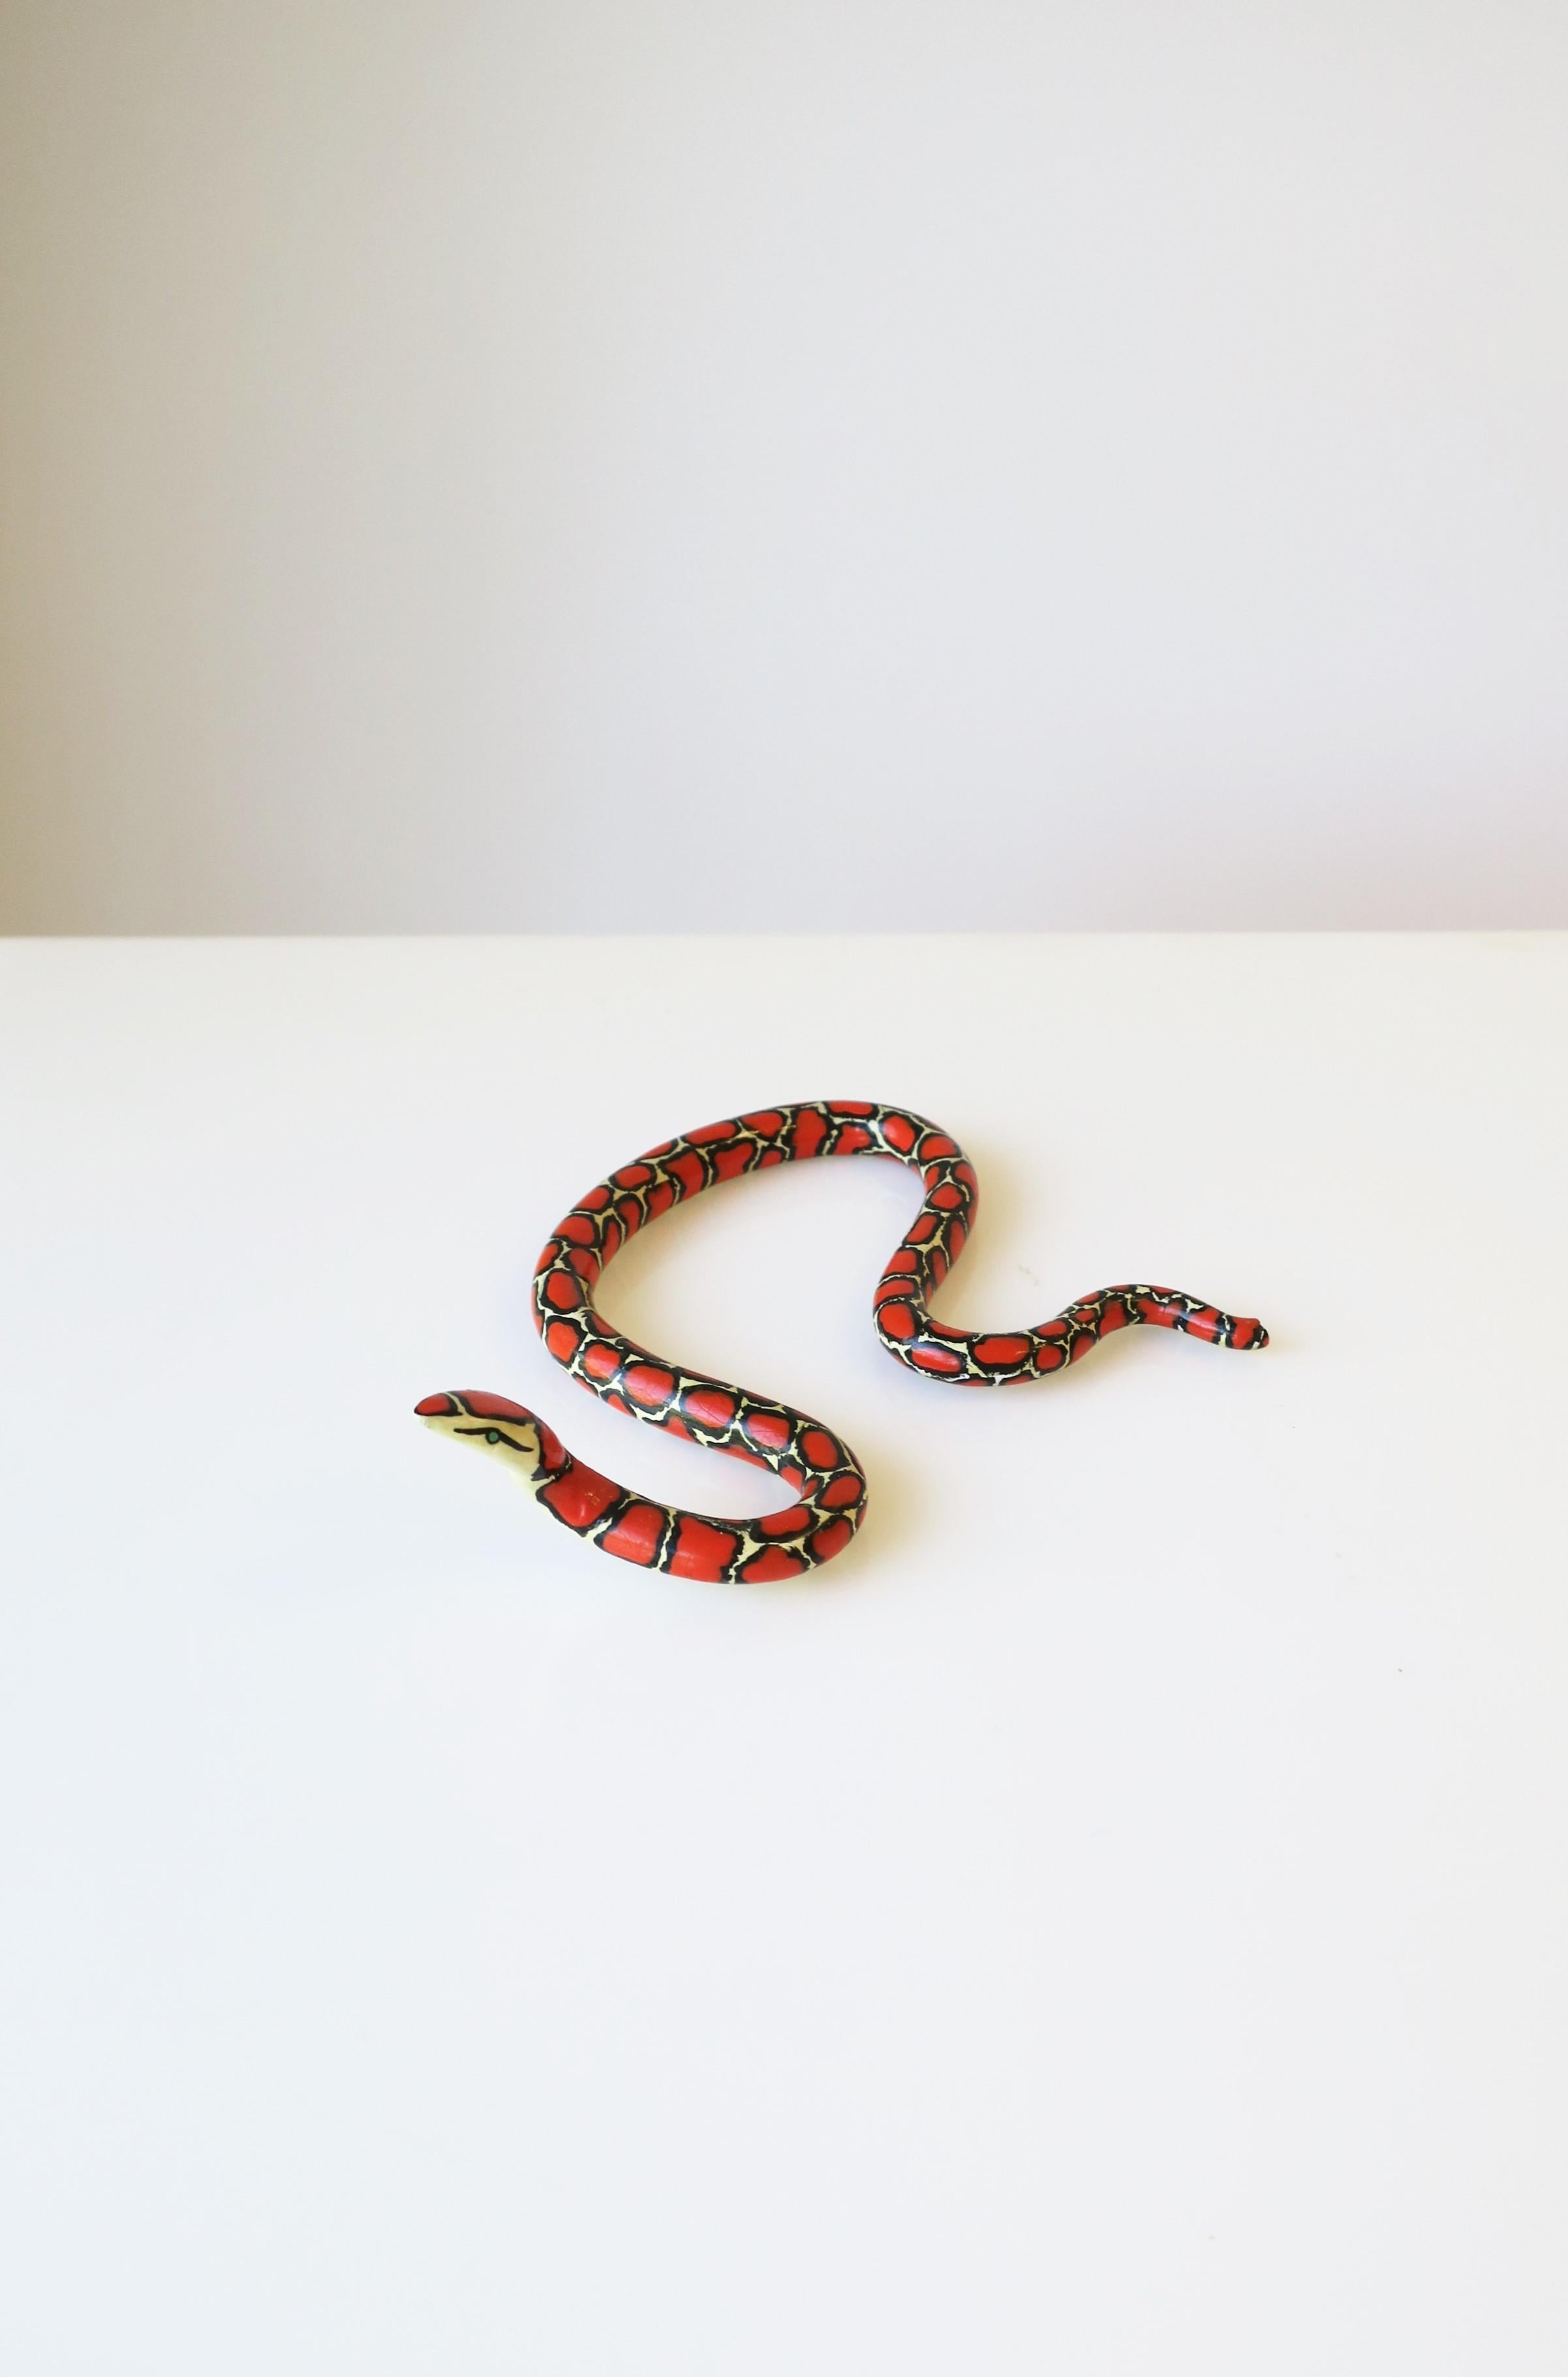 Art Deco Red Black and White Terracotta Ceramic Snake